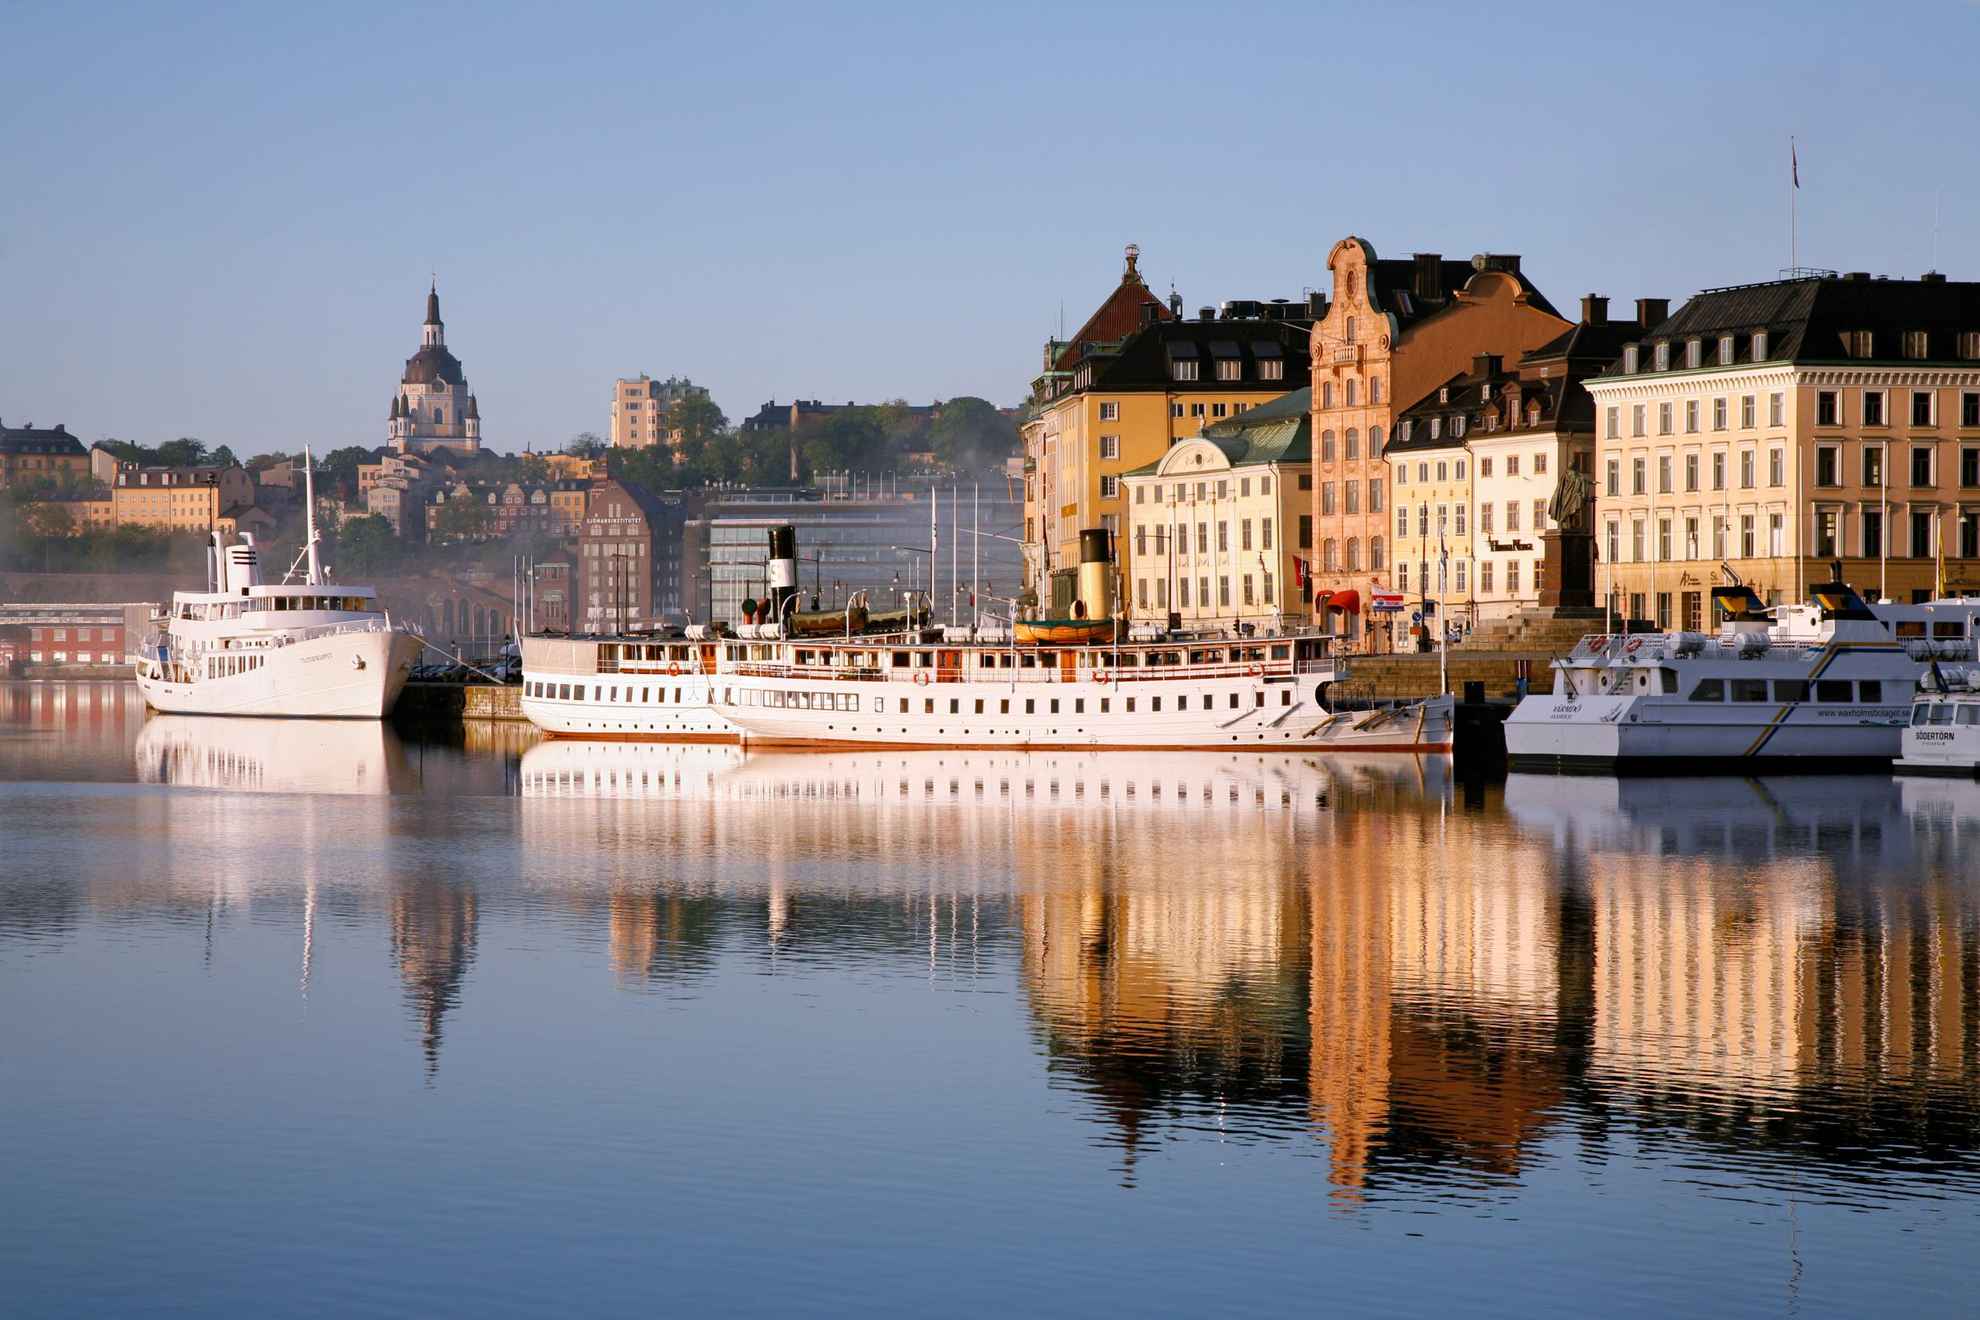 Der Hafen Skeppsbron in der Stockholmer Altstad. Zahlreiche Fähren legen am Hafen an. Die Altbauten der Stockholmer Innenstadt sind im Hintergrund.